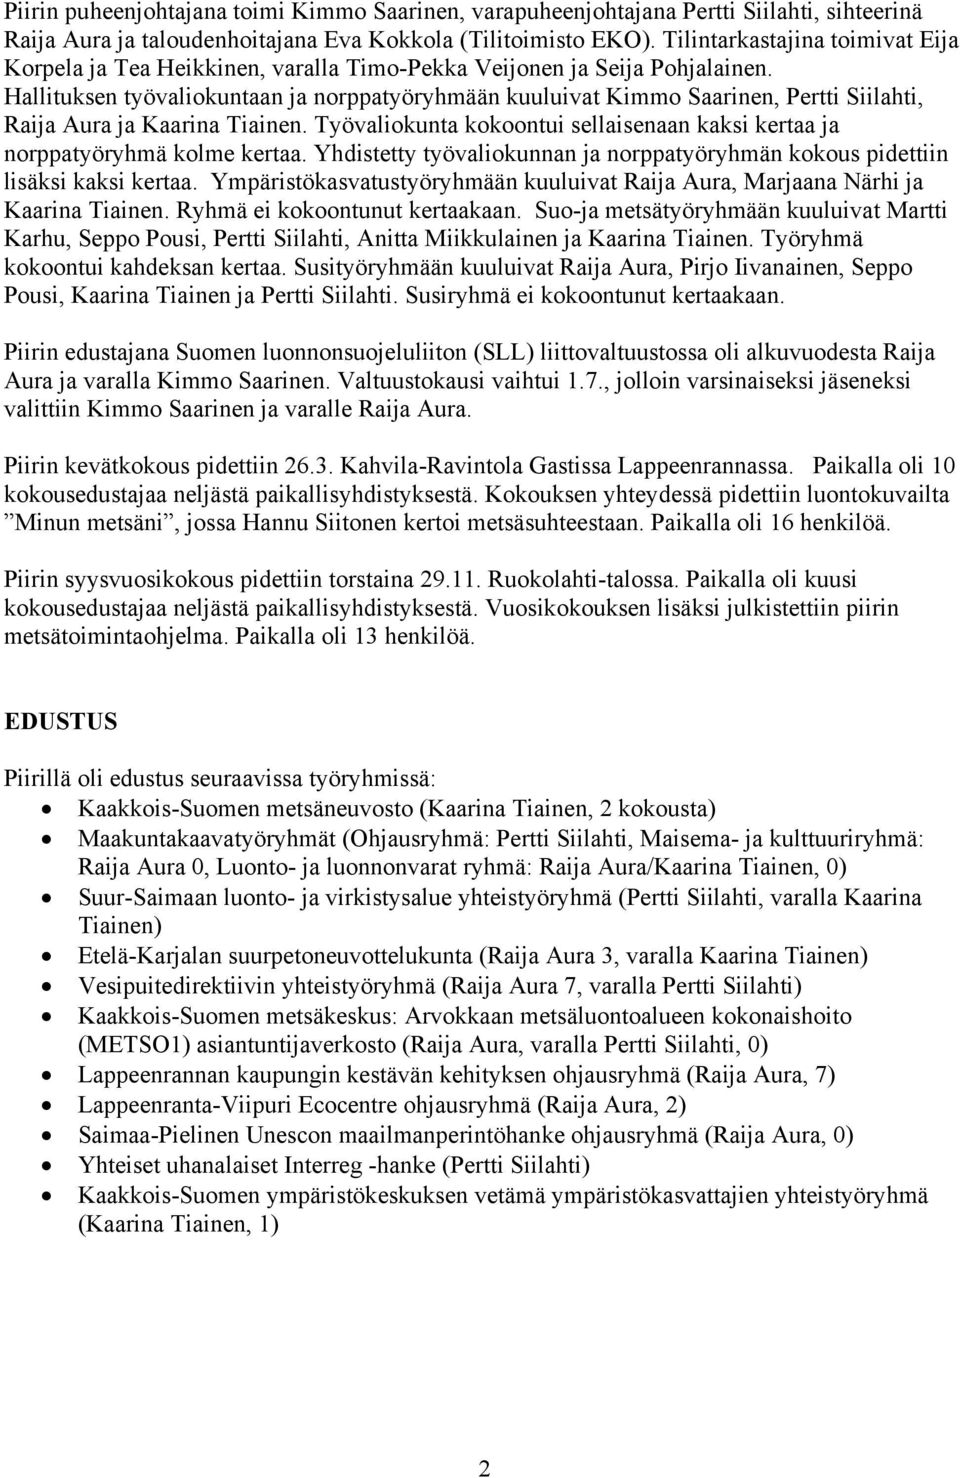 Hallituksen työvaliokuntaan ja norppatyöryhmään kuuluivat Kimmo Saarinen, Pertti Siilahti, Raija Aura ja Kaarina Tiainen.